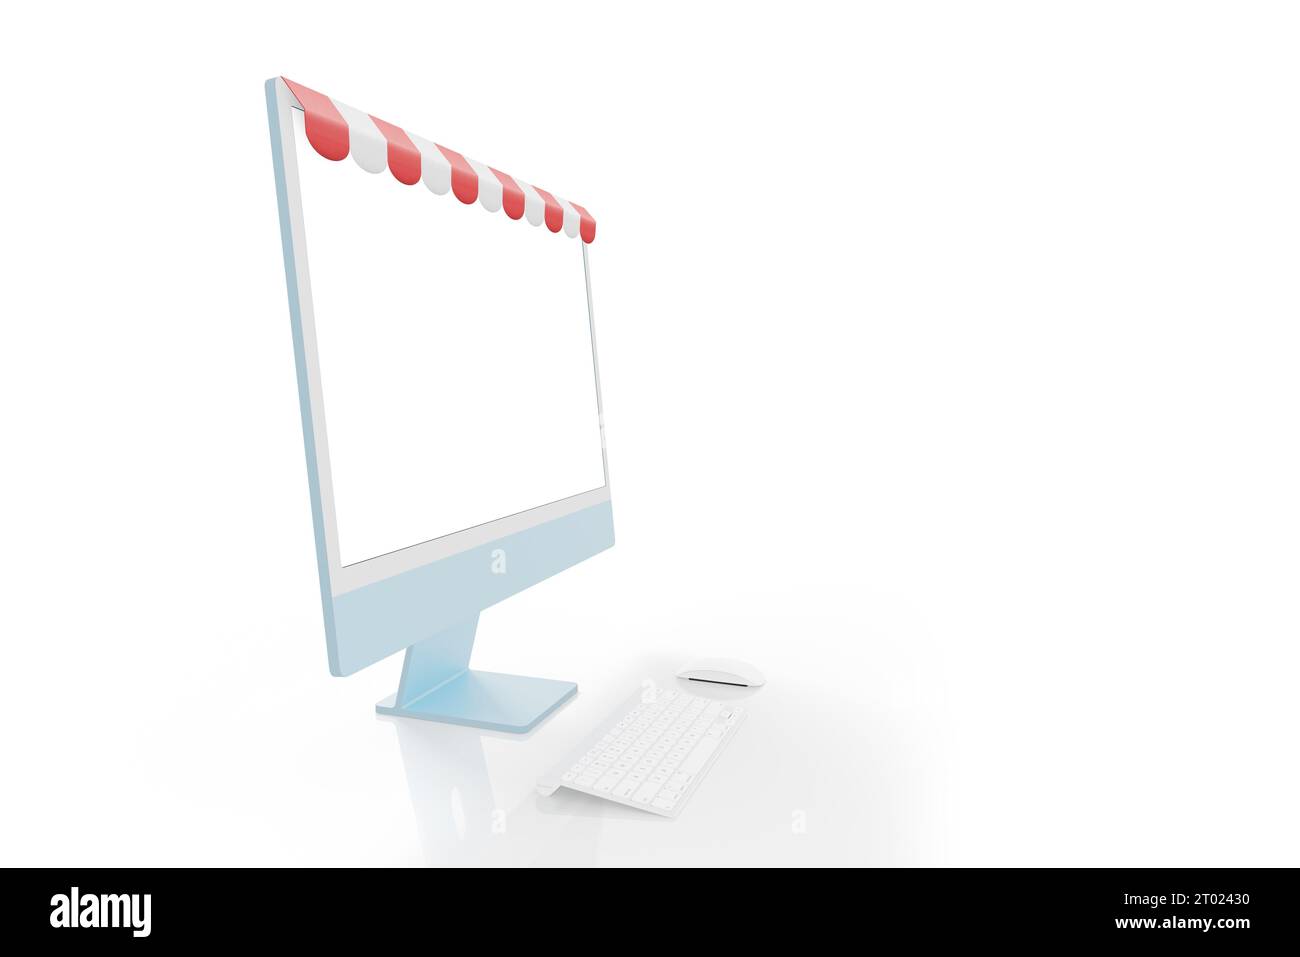 Computerdisplay mit rot-weißem Markisenkonzept. Isolierter Bildschirm für Modell, App, Webseite oder Produktpräsentation Stockfoto